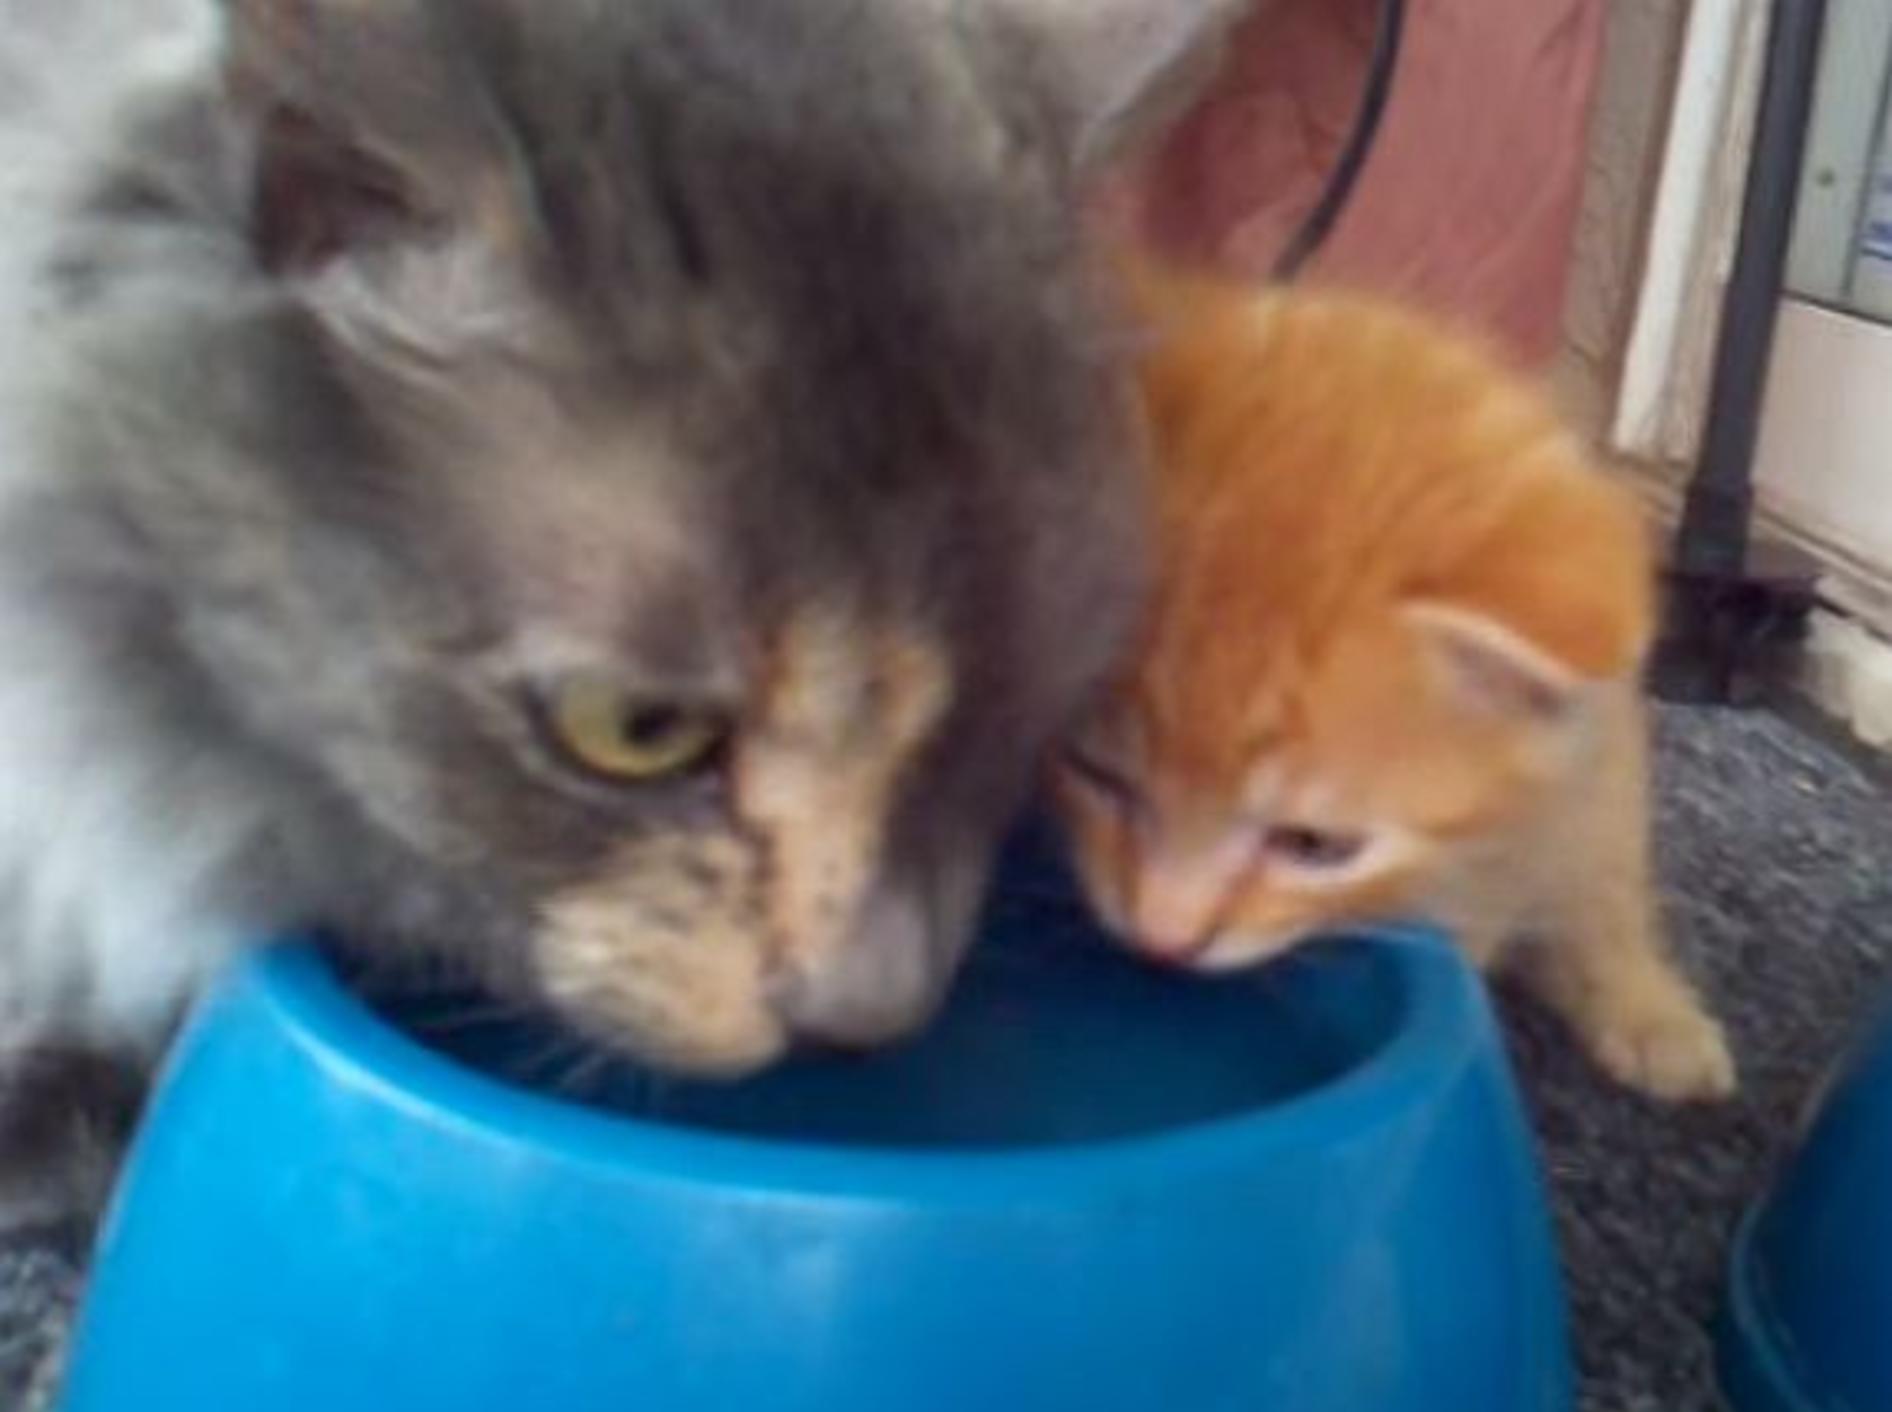 Katzenmutter macht vor: "So trinkt man Wasser!" – Bild: Youtube / Owen DeNiro